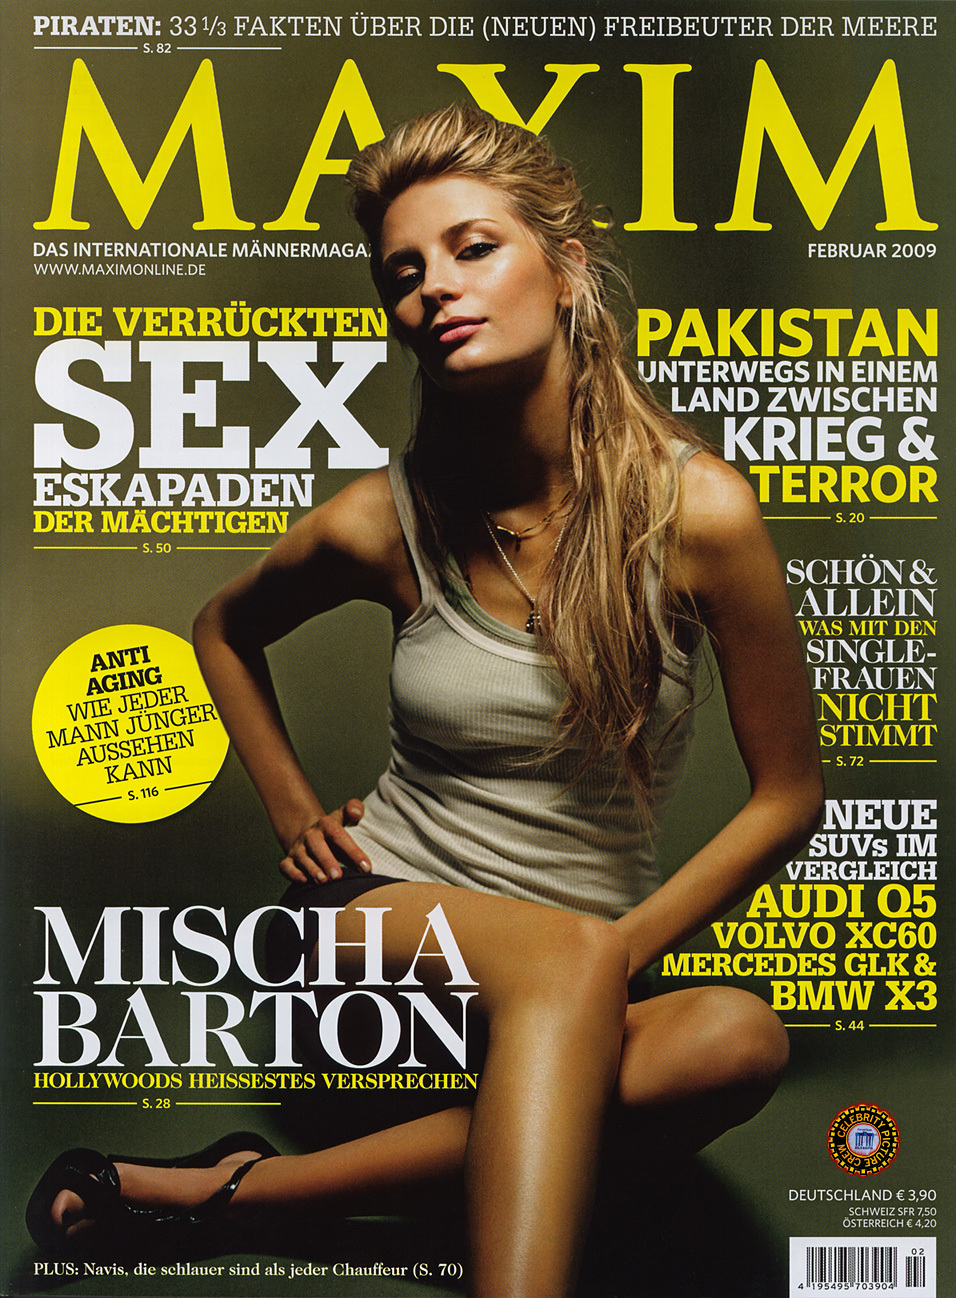 Миша Бартон в журнале Maxim. Германия. Февраль 2009